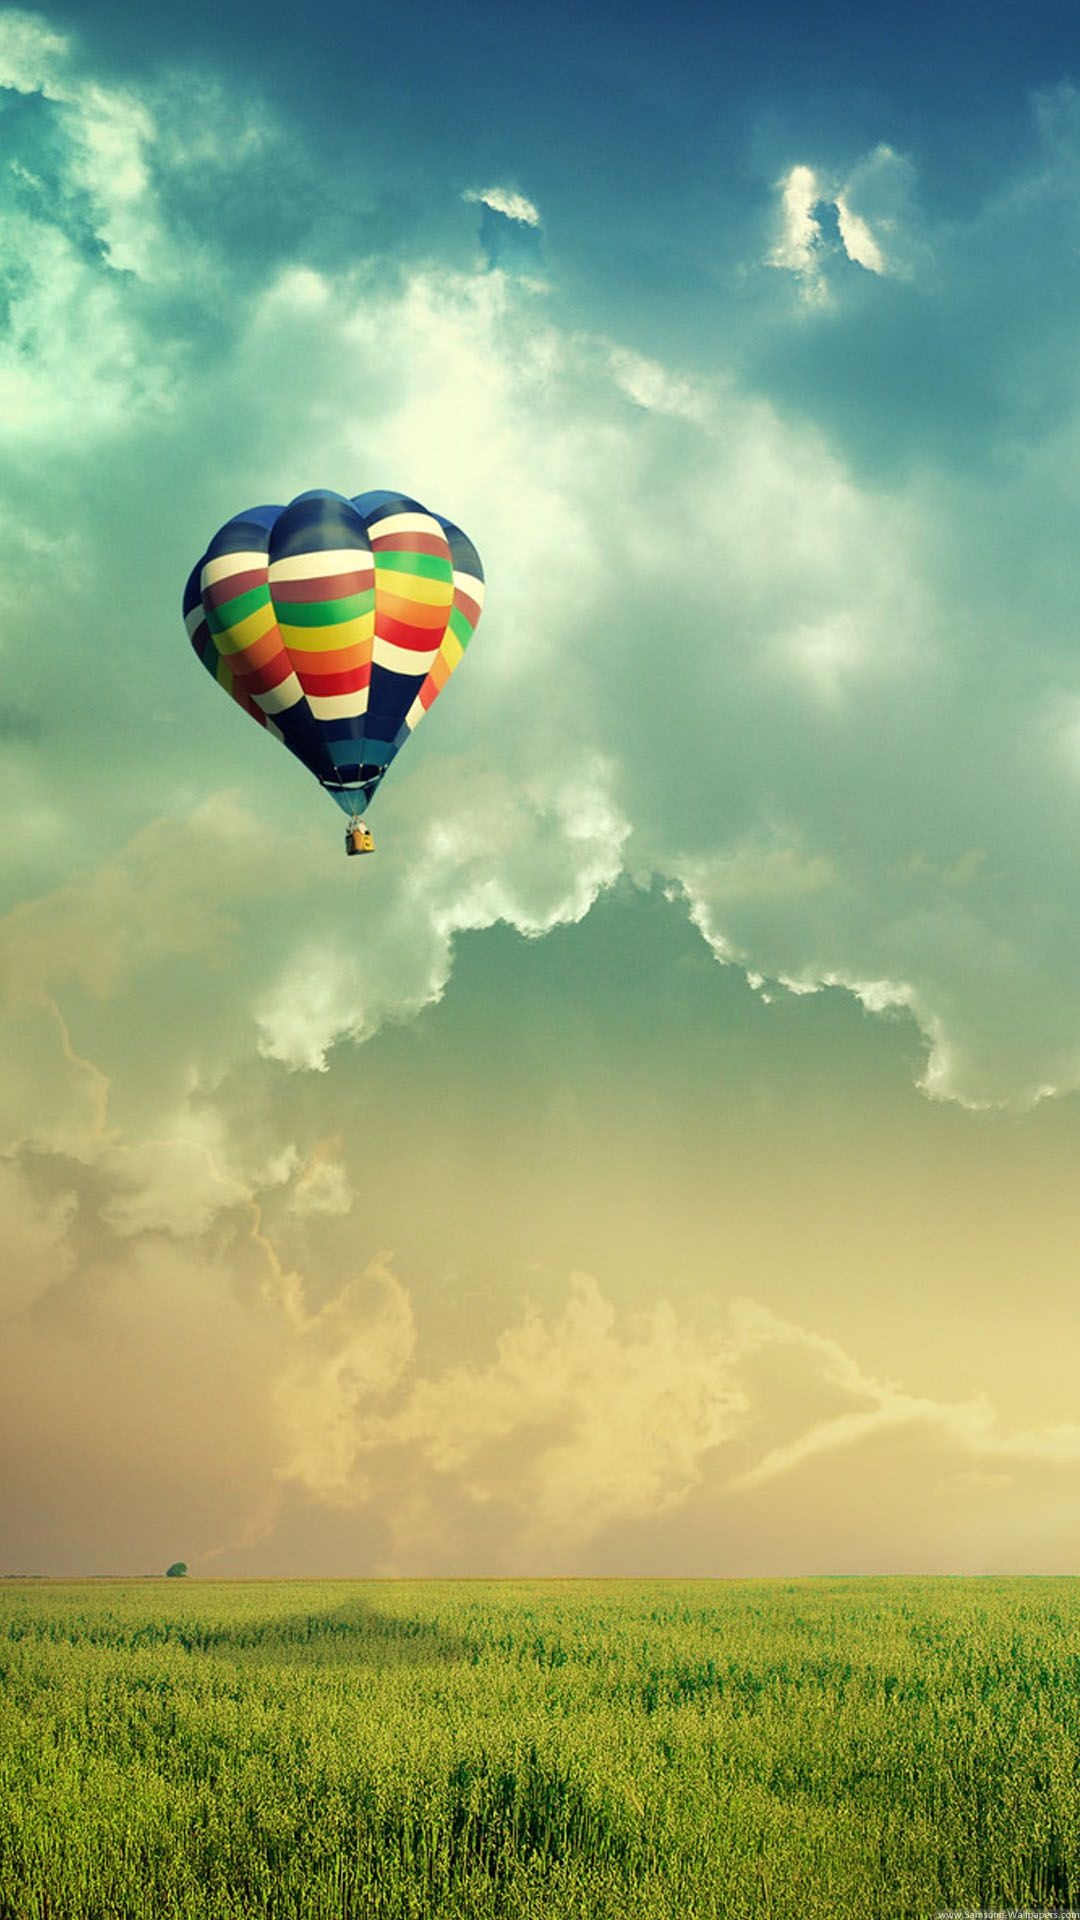 Air Sports: Air balloon Landscape. 1080x1920 Full HD Wallpaper.